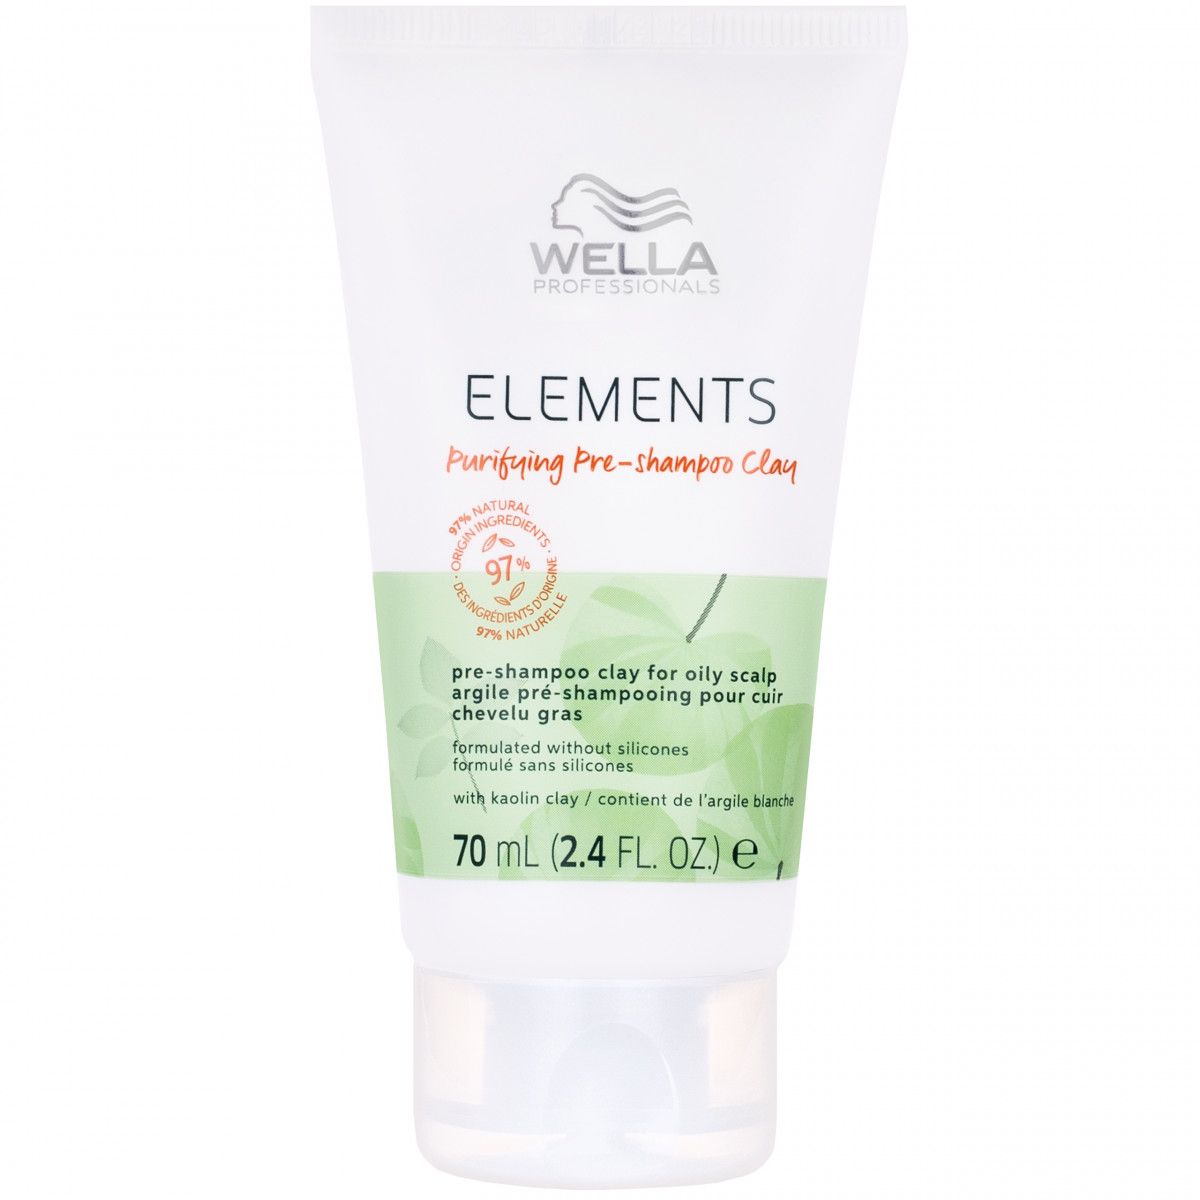 Wella Elements Purifying Pre-shampoo Clay – oczyszczająca glinka do skóry głowy, 70 ml